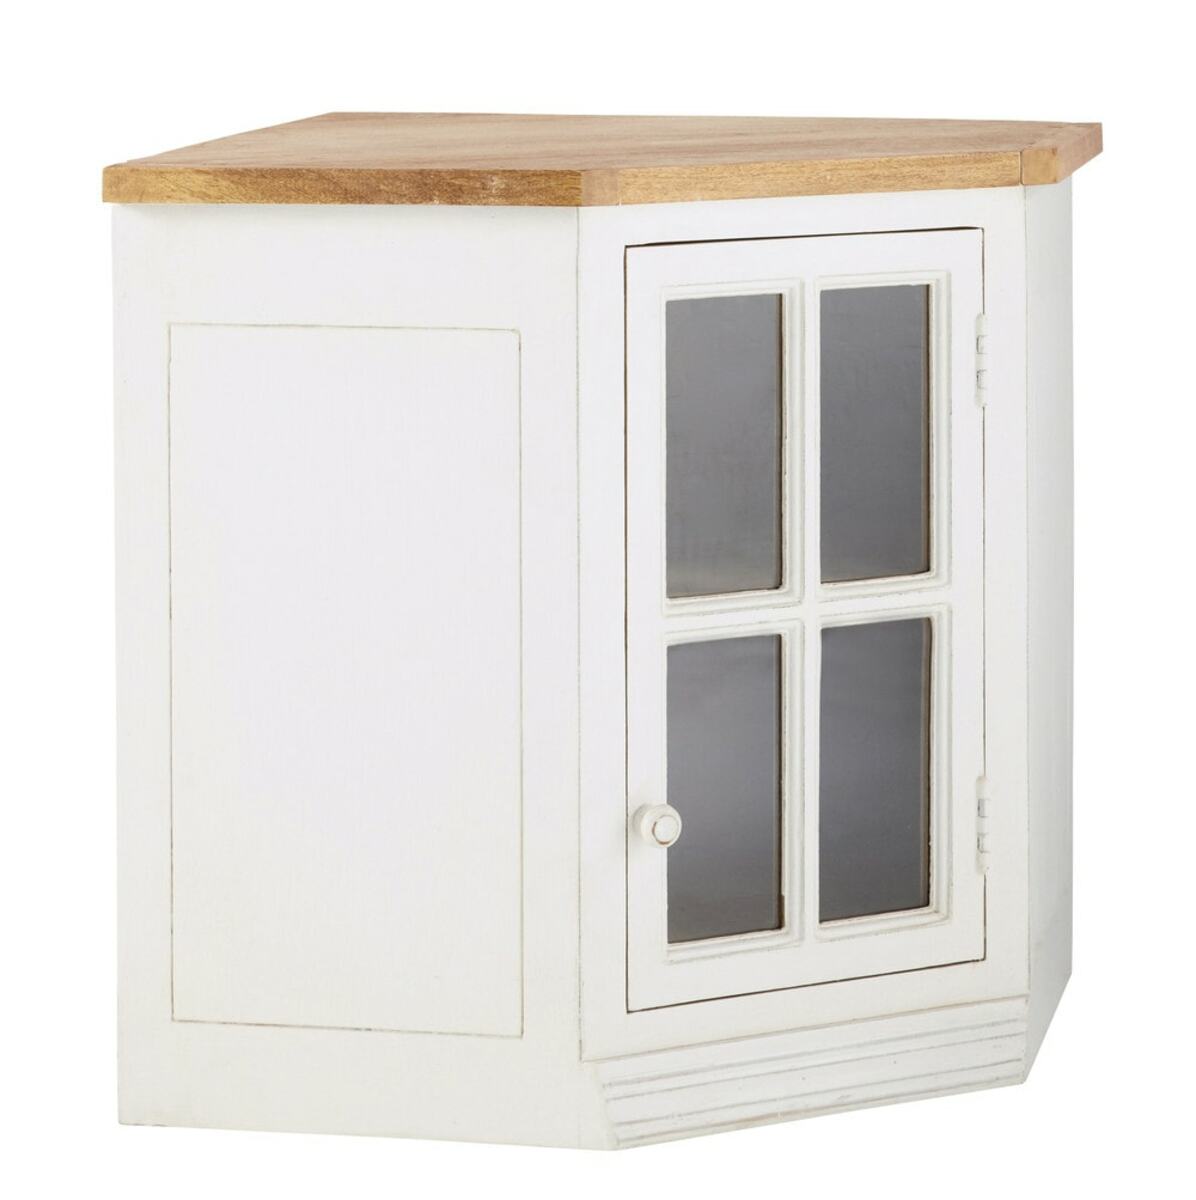 Mueble alto esquinero de cocina con 1 puerta acristalada y tirador a la izquierda color marfil